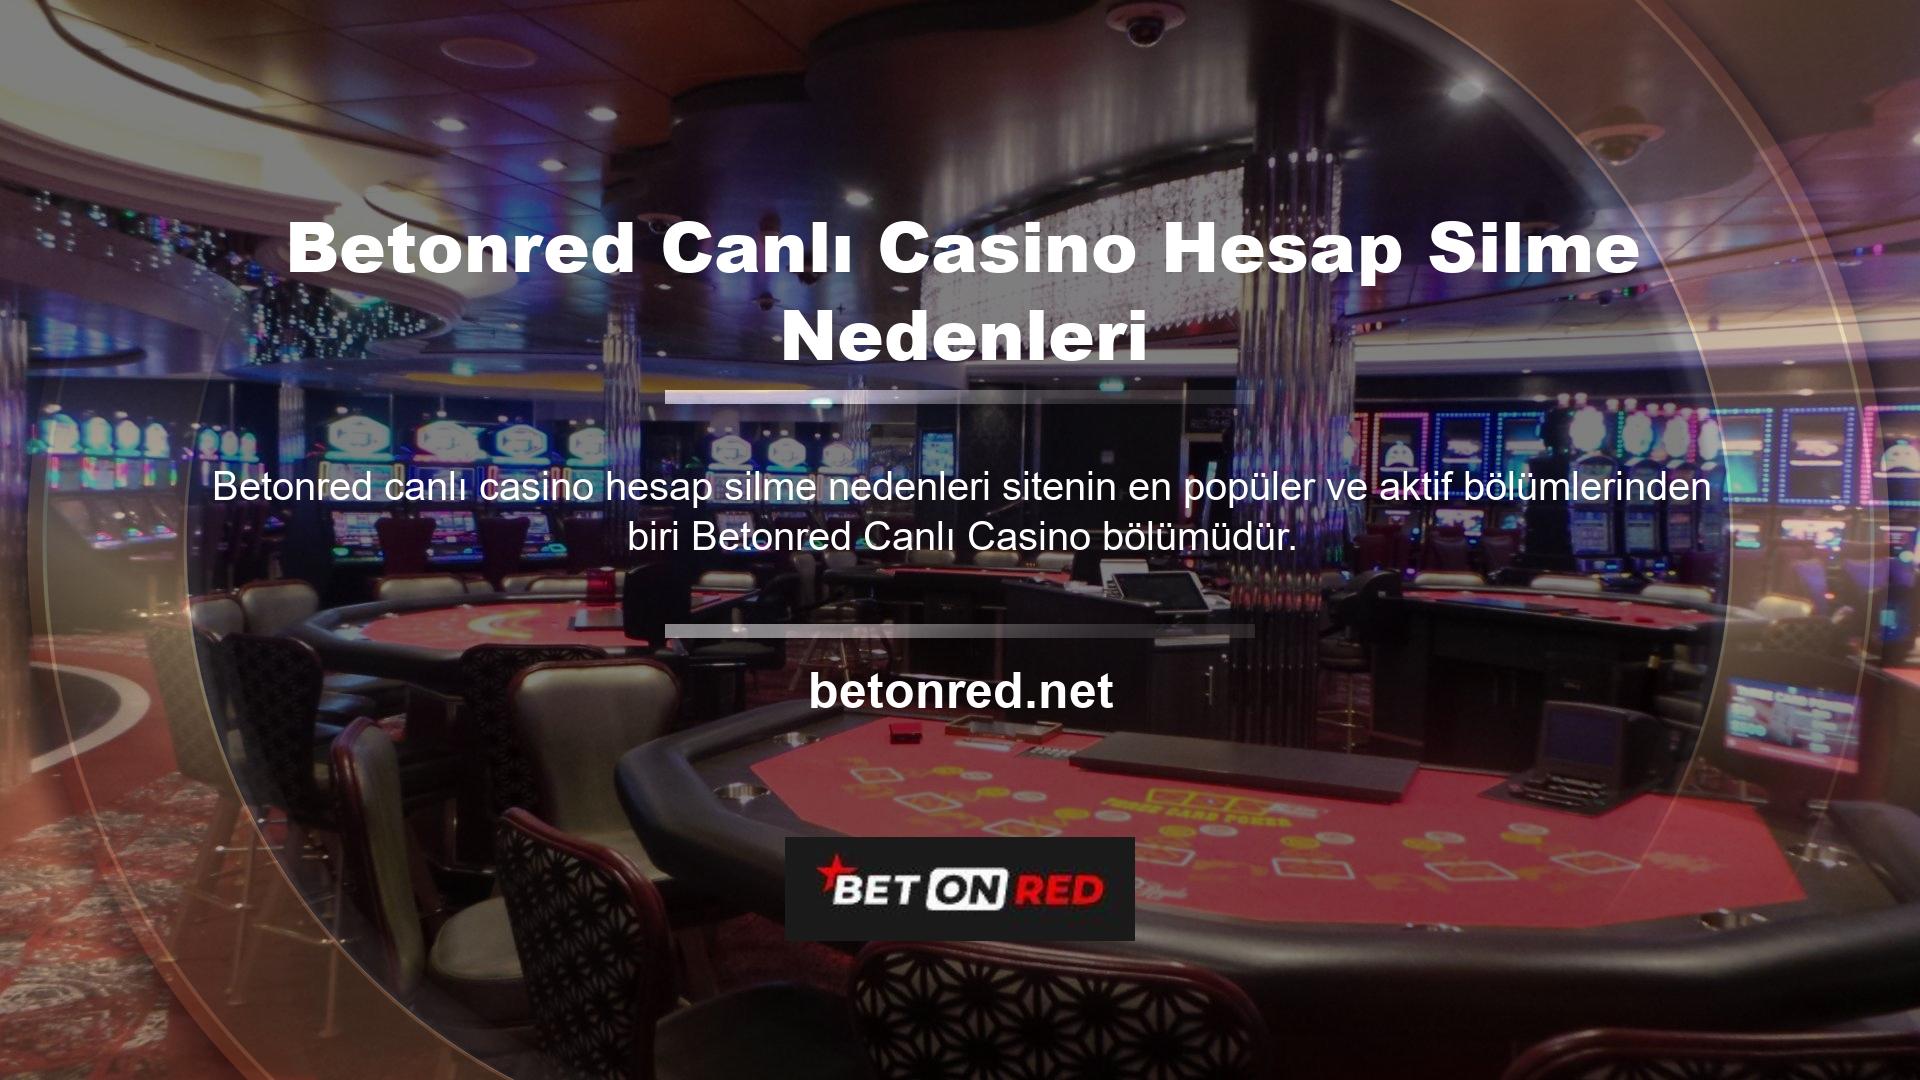 Betonred onlarca canlı casino hesabının kapatılmasının nedeni, çeşitli masalarda rulet, bakara, blackjack ve poker oynama imkanı sunmasıdır